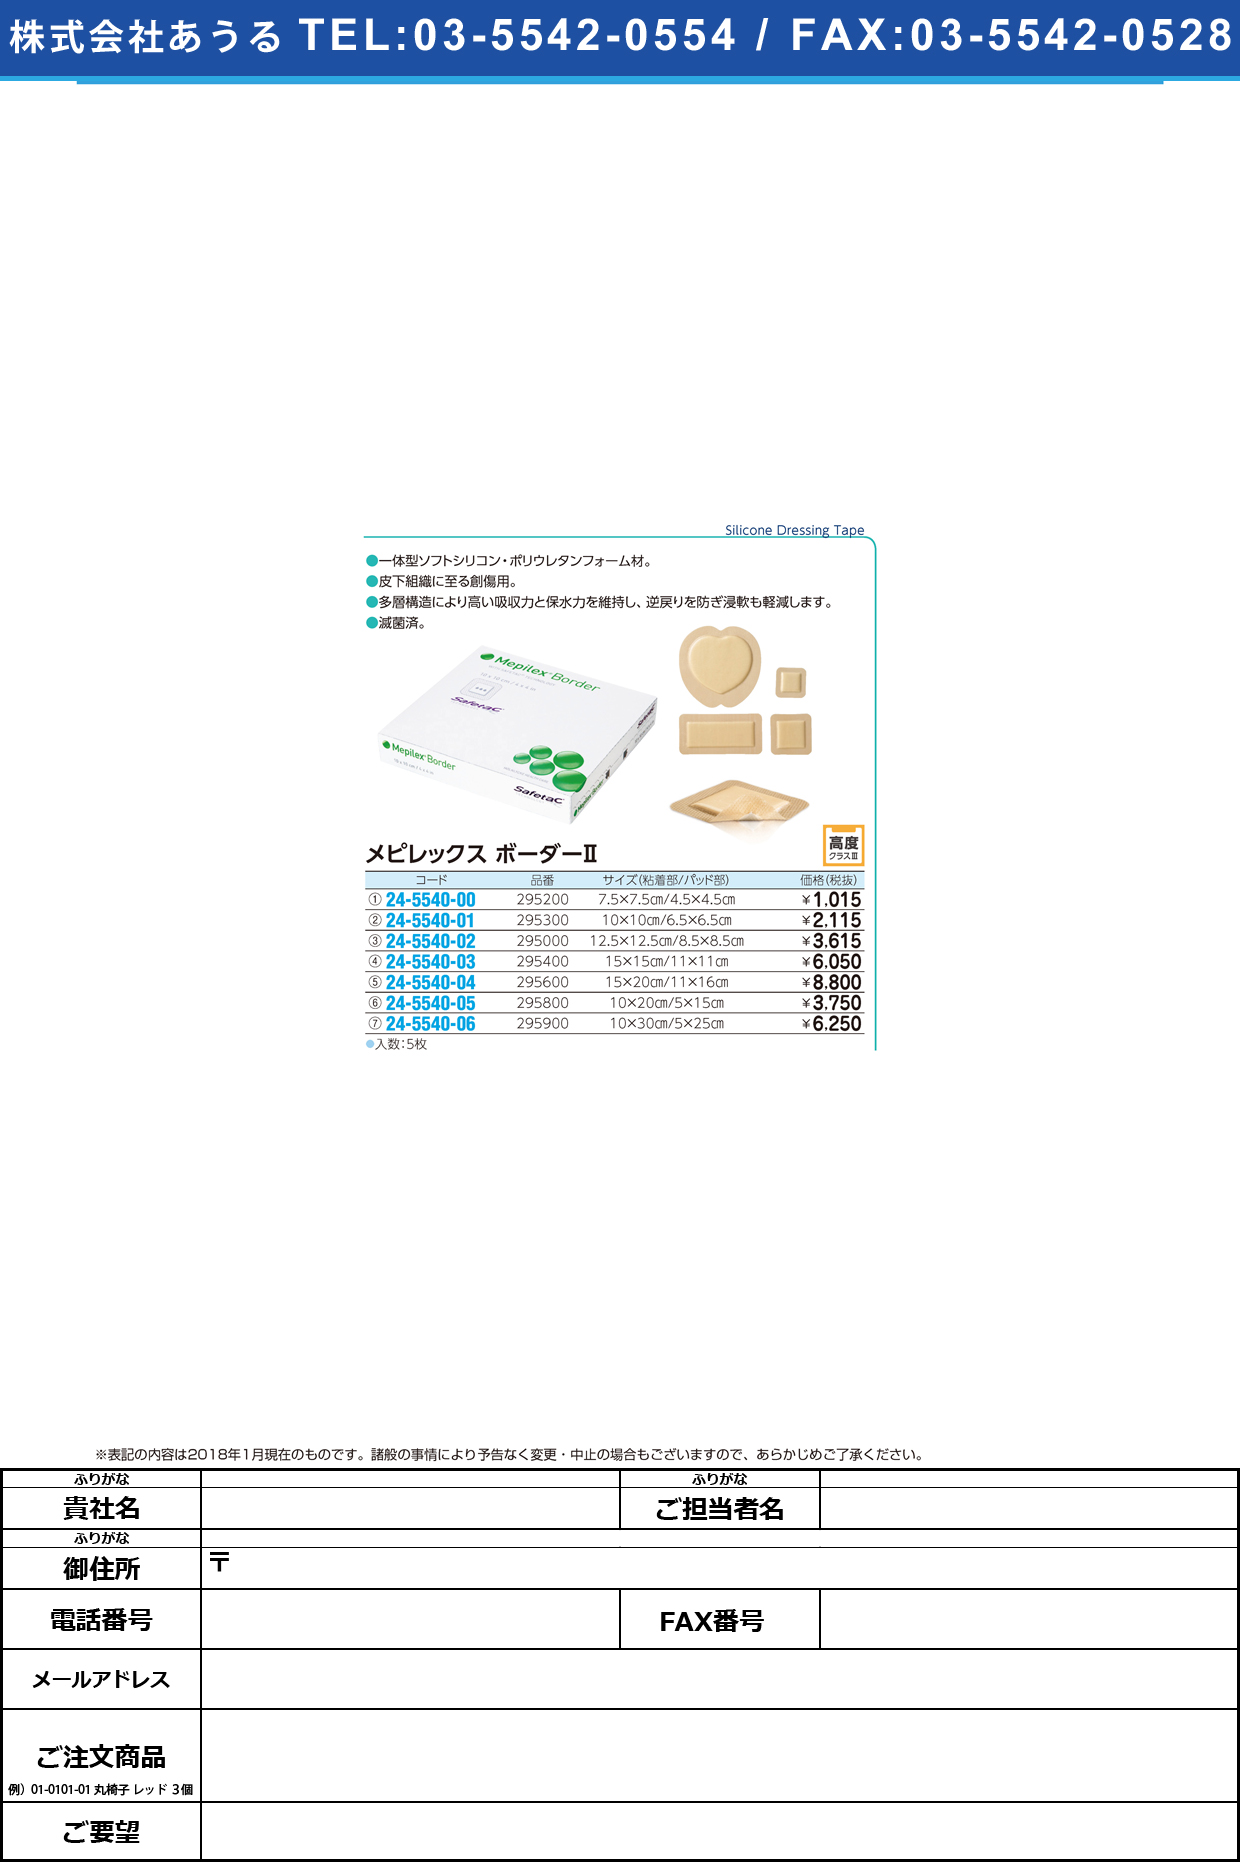 (24-5540-05)メピレックスボーダーⅡ（５枚入） 295800(10X20/5X15) ﾒﾋﾟﾚｯｸｽﾎﾞｰﾀﾞｰ2(メンリッケヘルスケア)【1箱単位】【2019年カタログ商品】